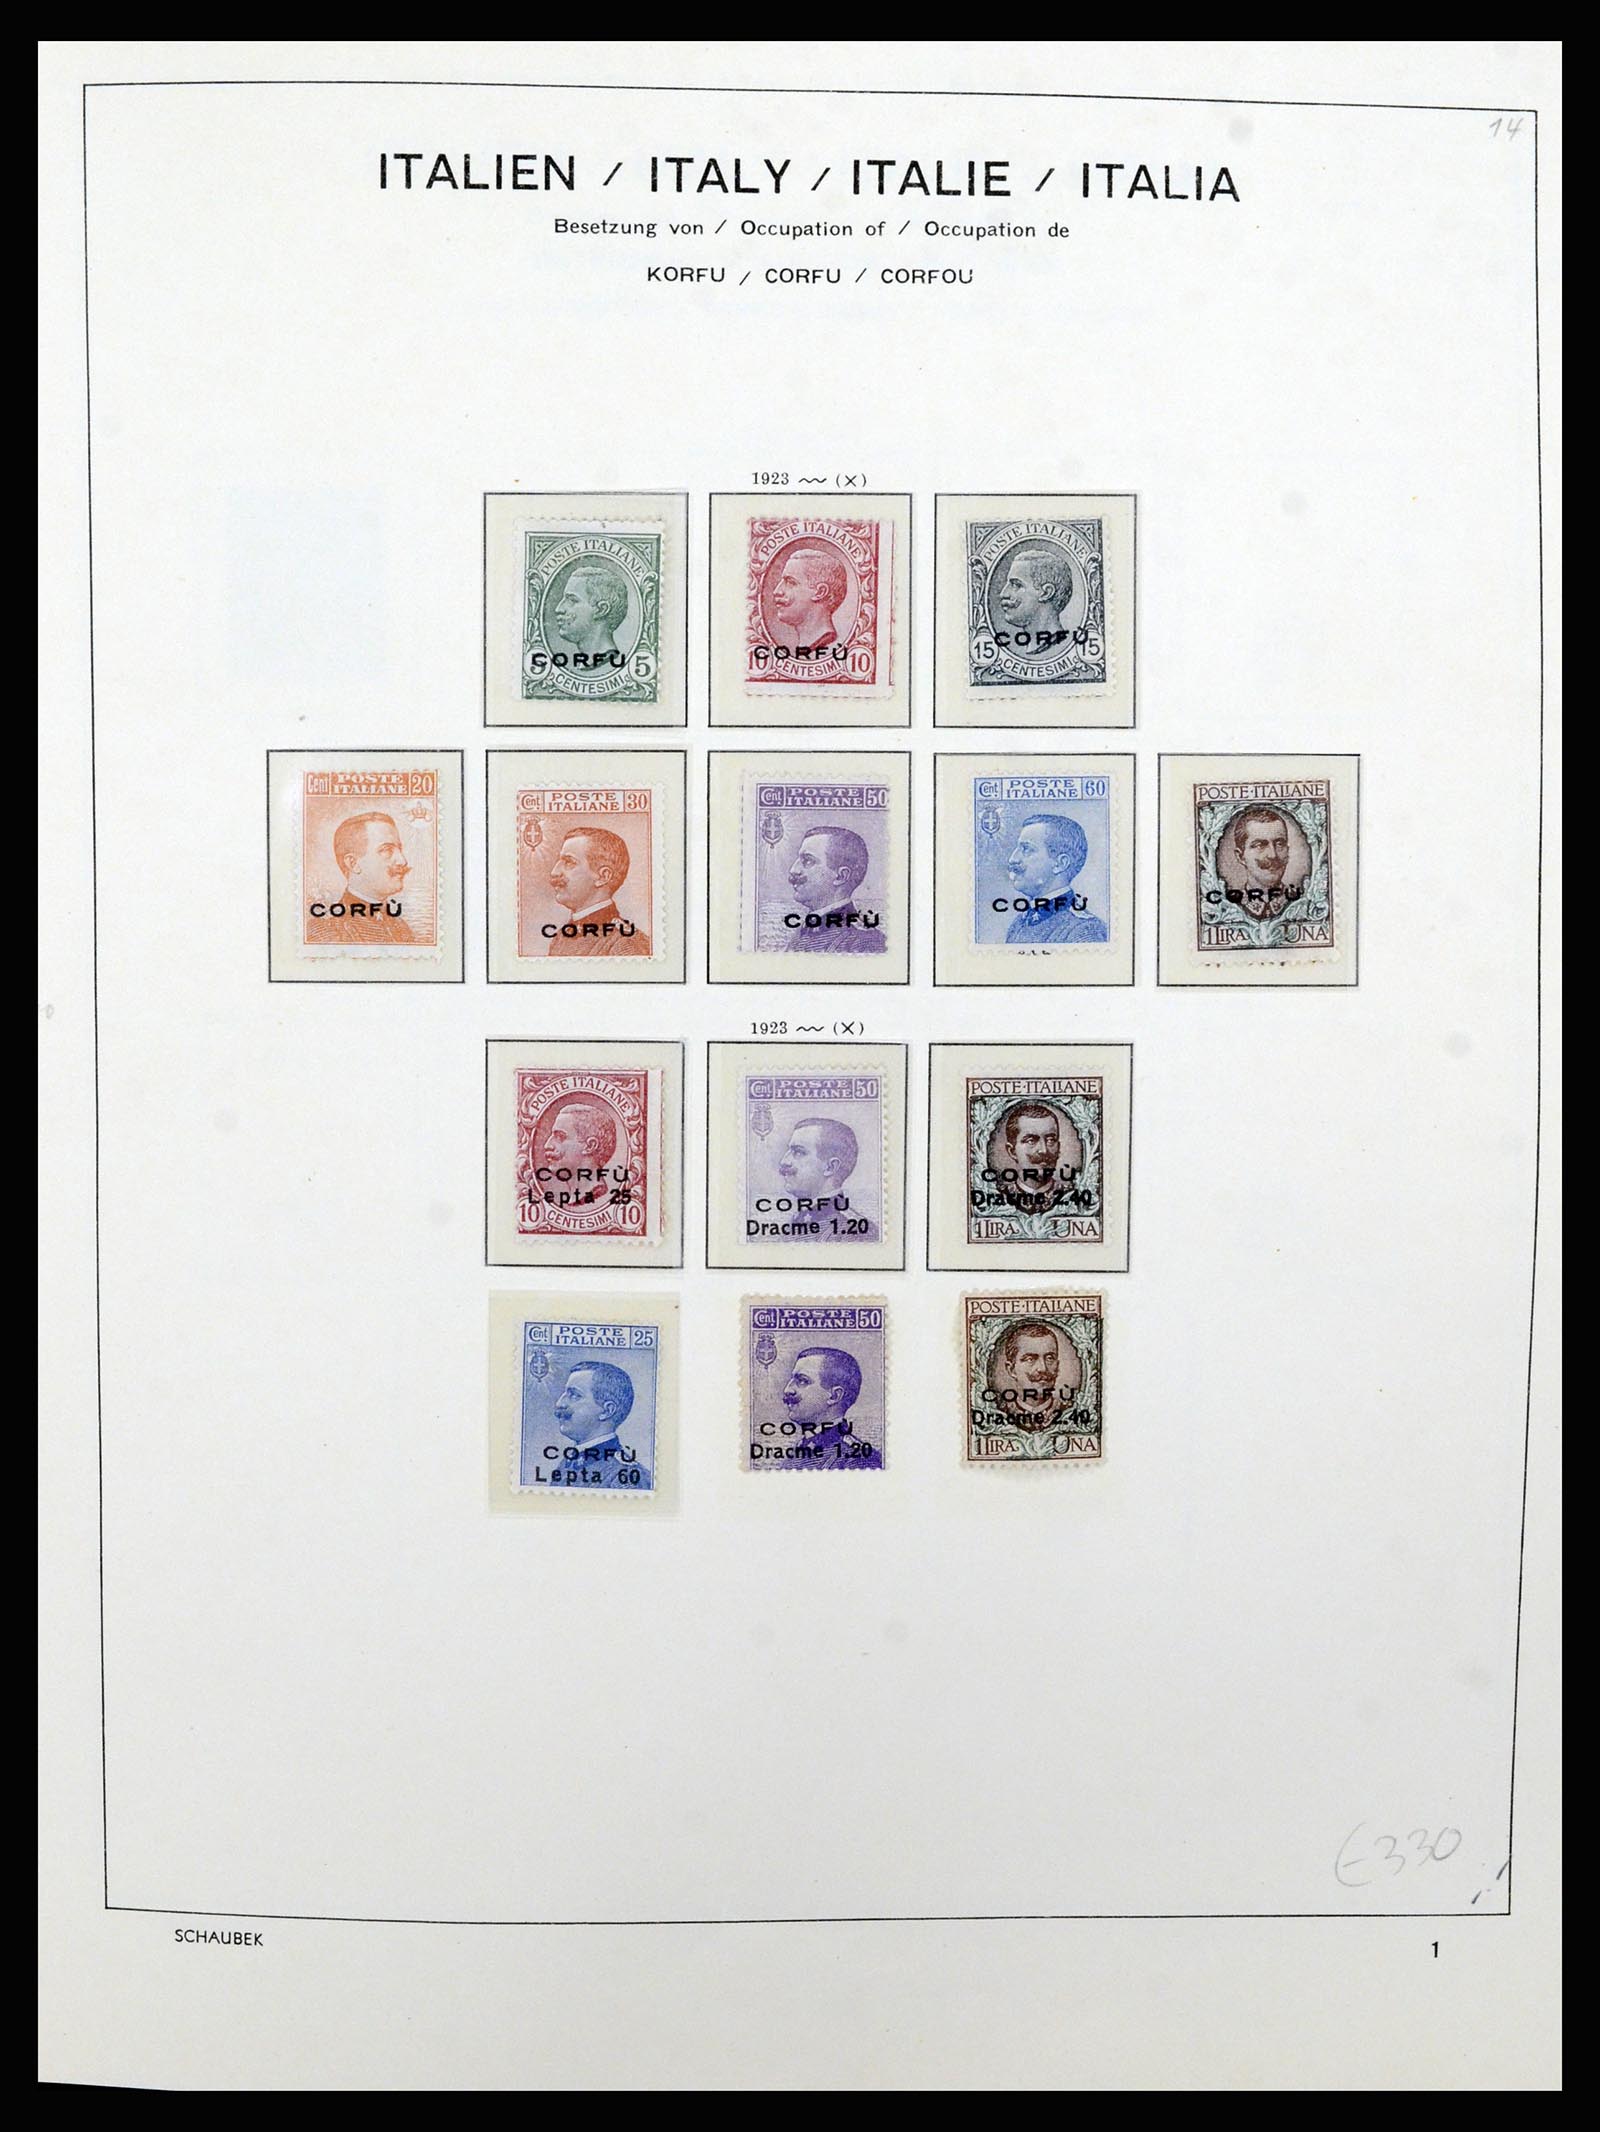 36577 005 - Stamp collection 36577 Italiaanse gebieden 1870-1940.